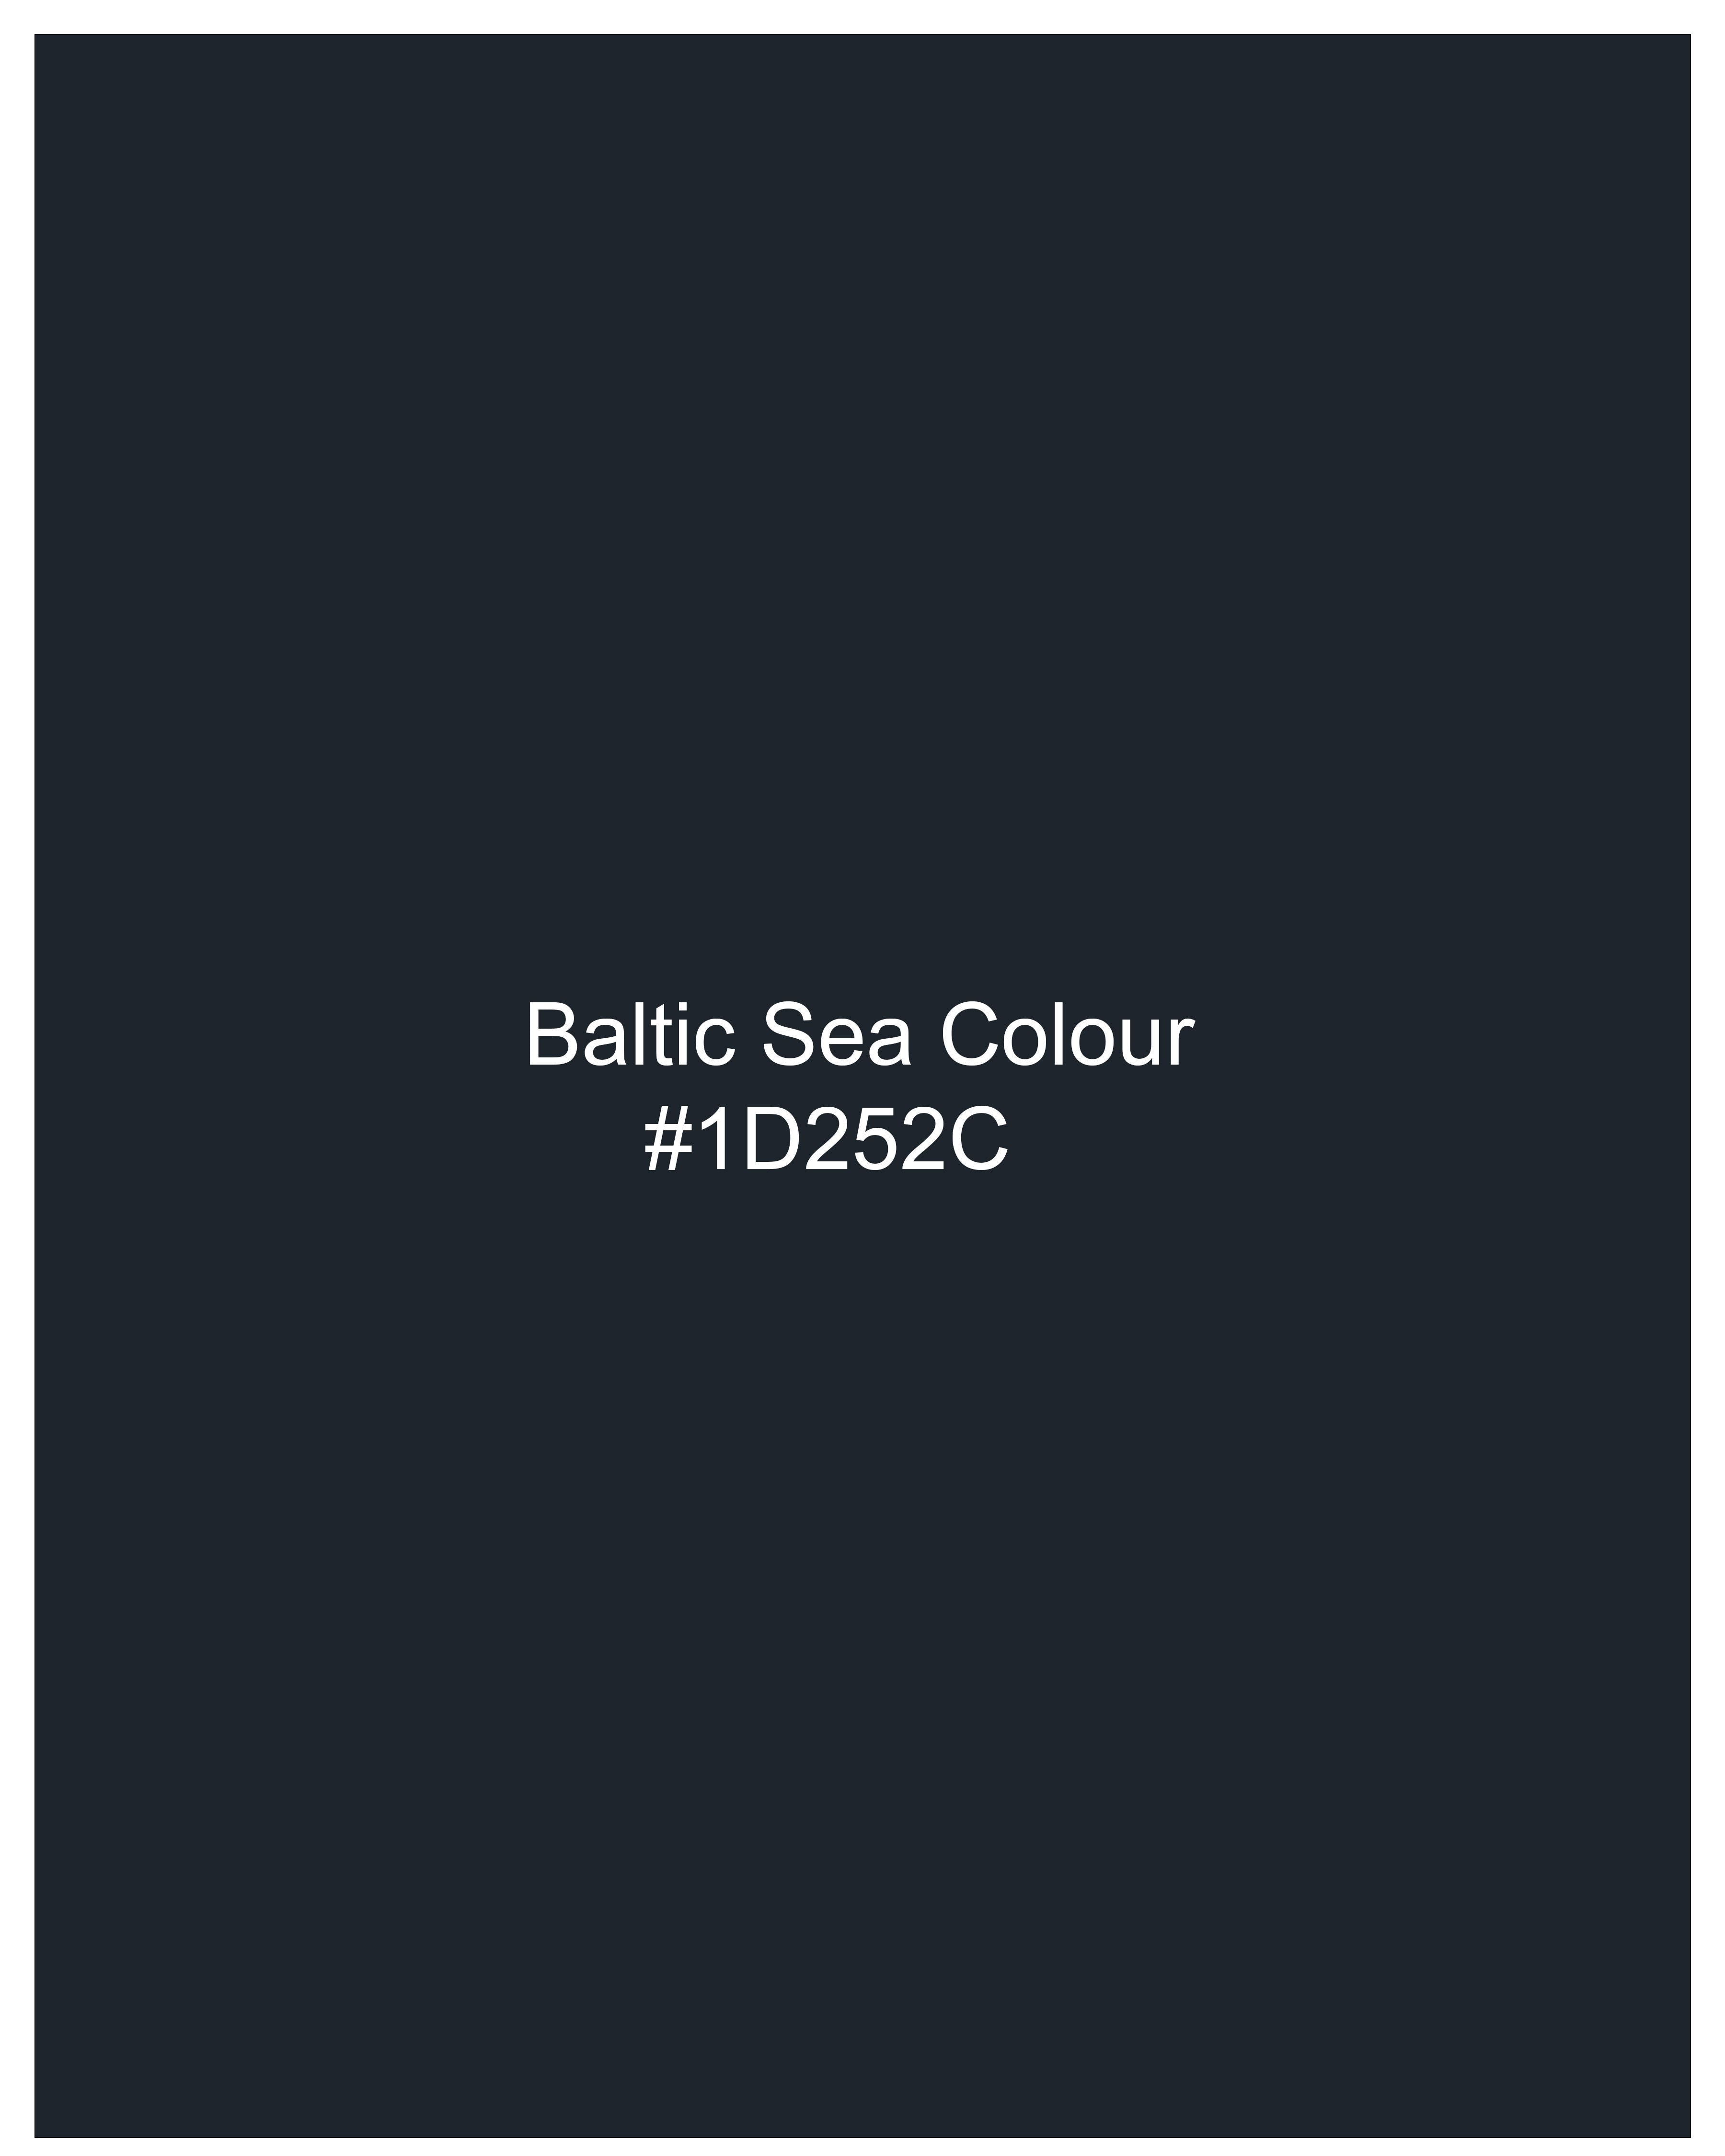 Baltic Sea Blue Premium Cotton Bandhgala Suit ST2478-BG-36, ST2478-BG-38, ST2478-BG-40, ST2478-BG-42, ST2478-BG-44, ST2478-BG-46, ST2478-BG-48, ST2478-BG-50, ST2478-BG-52, ST2478-BG-54, ST2478-BG-56, ST2478-BG-58, ST2478-BG-60